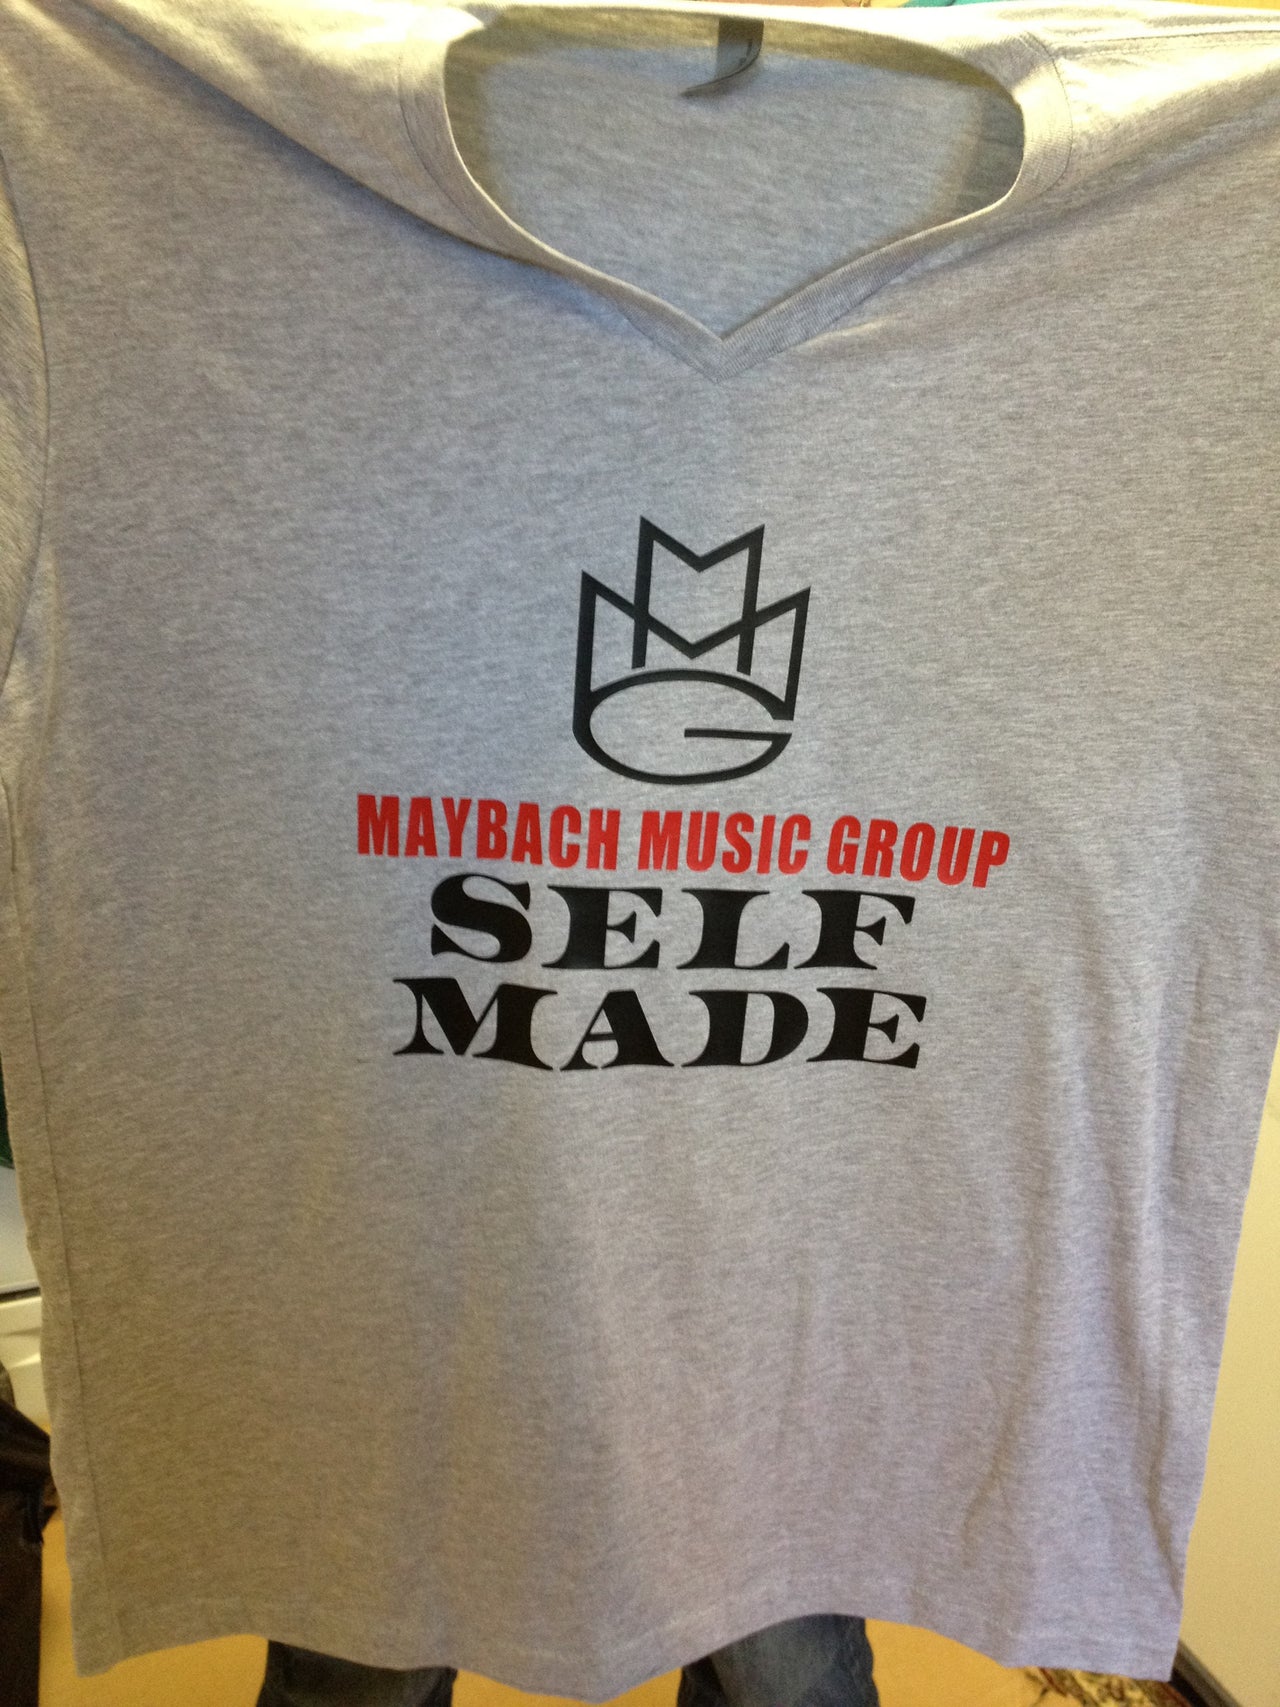 Maybach Music Group "Self Made" V-Neck Tshirt - TshirtNow.net - 6